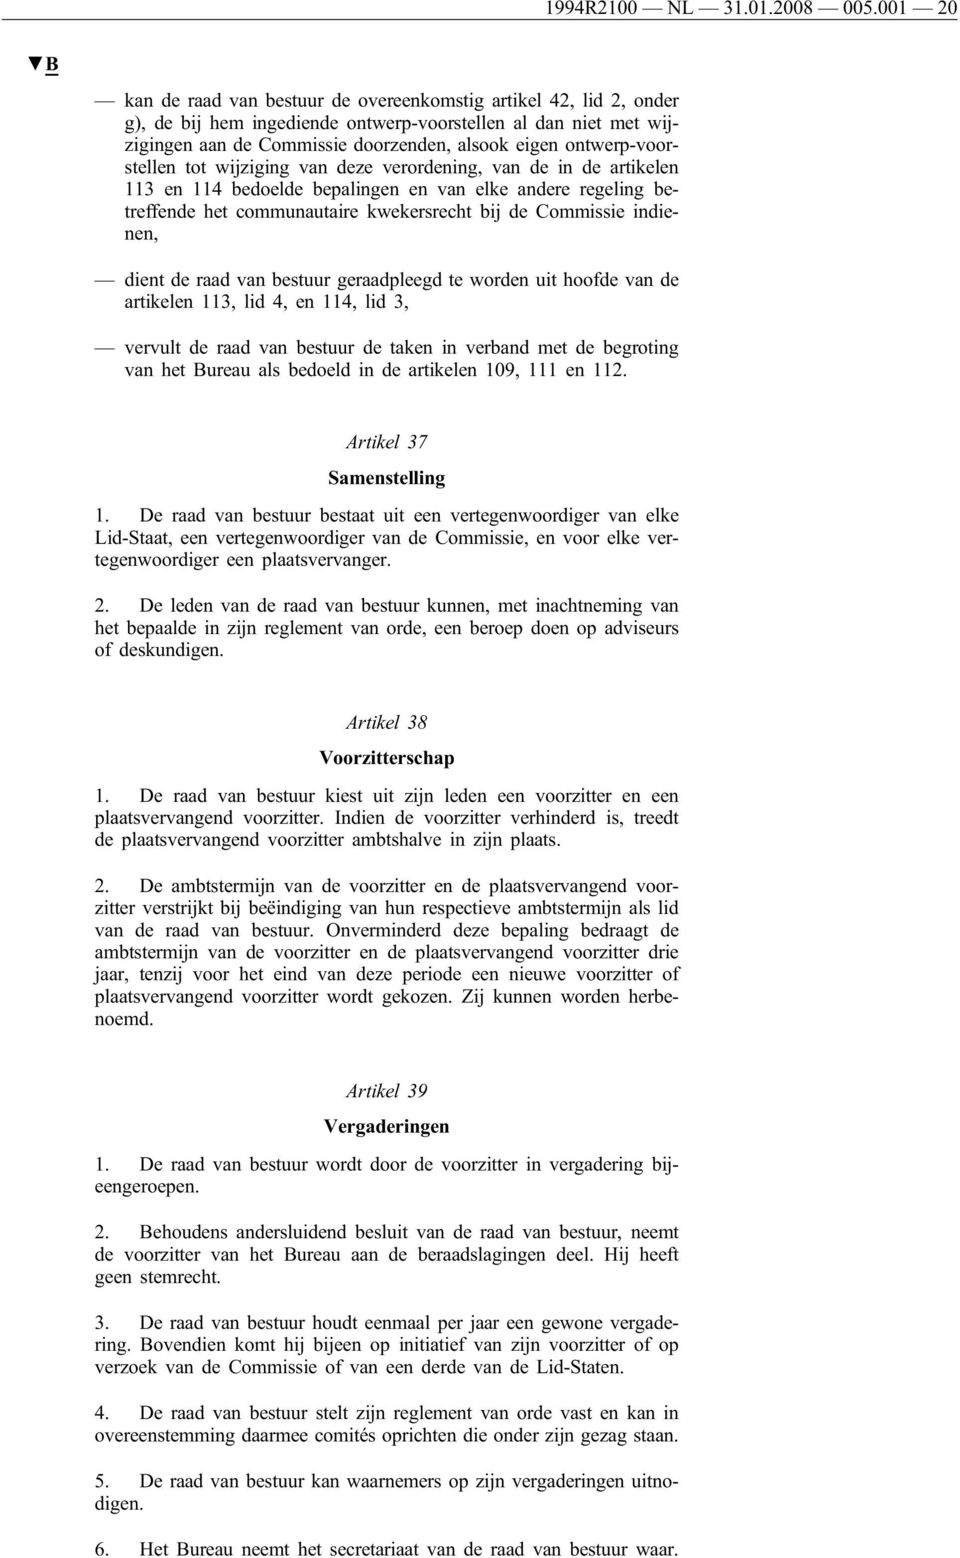 ontwerp-voorstellen tot wijziging van deze verordening, van de in de artikelen 113 en 114 bedoelde bepalingen en van elke andere regeling betreffende het communautaire kwekersrecht bij de Commissie